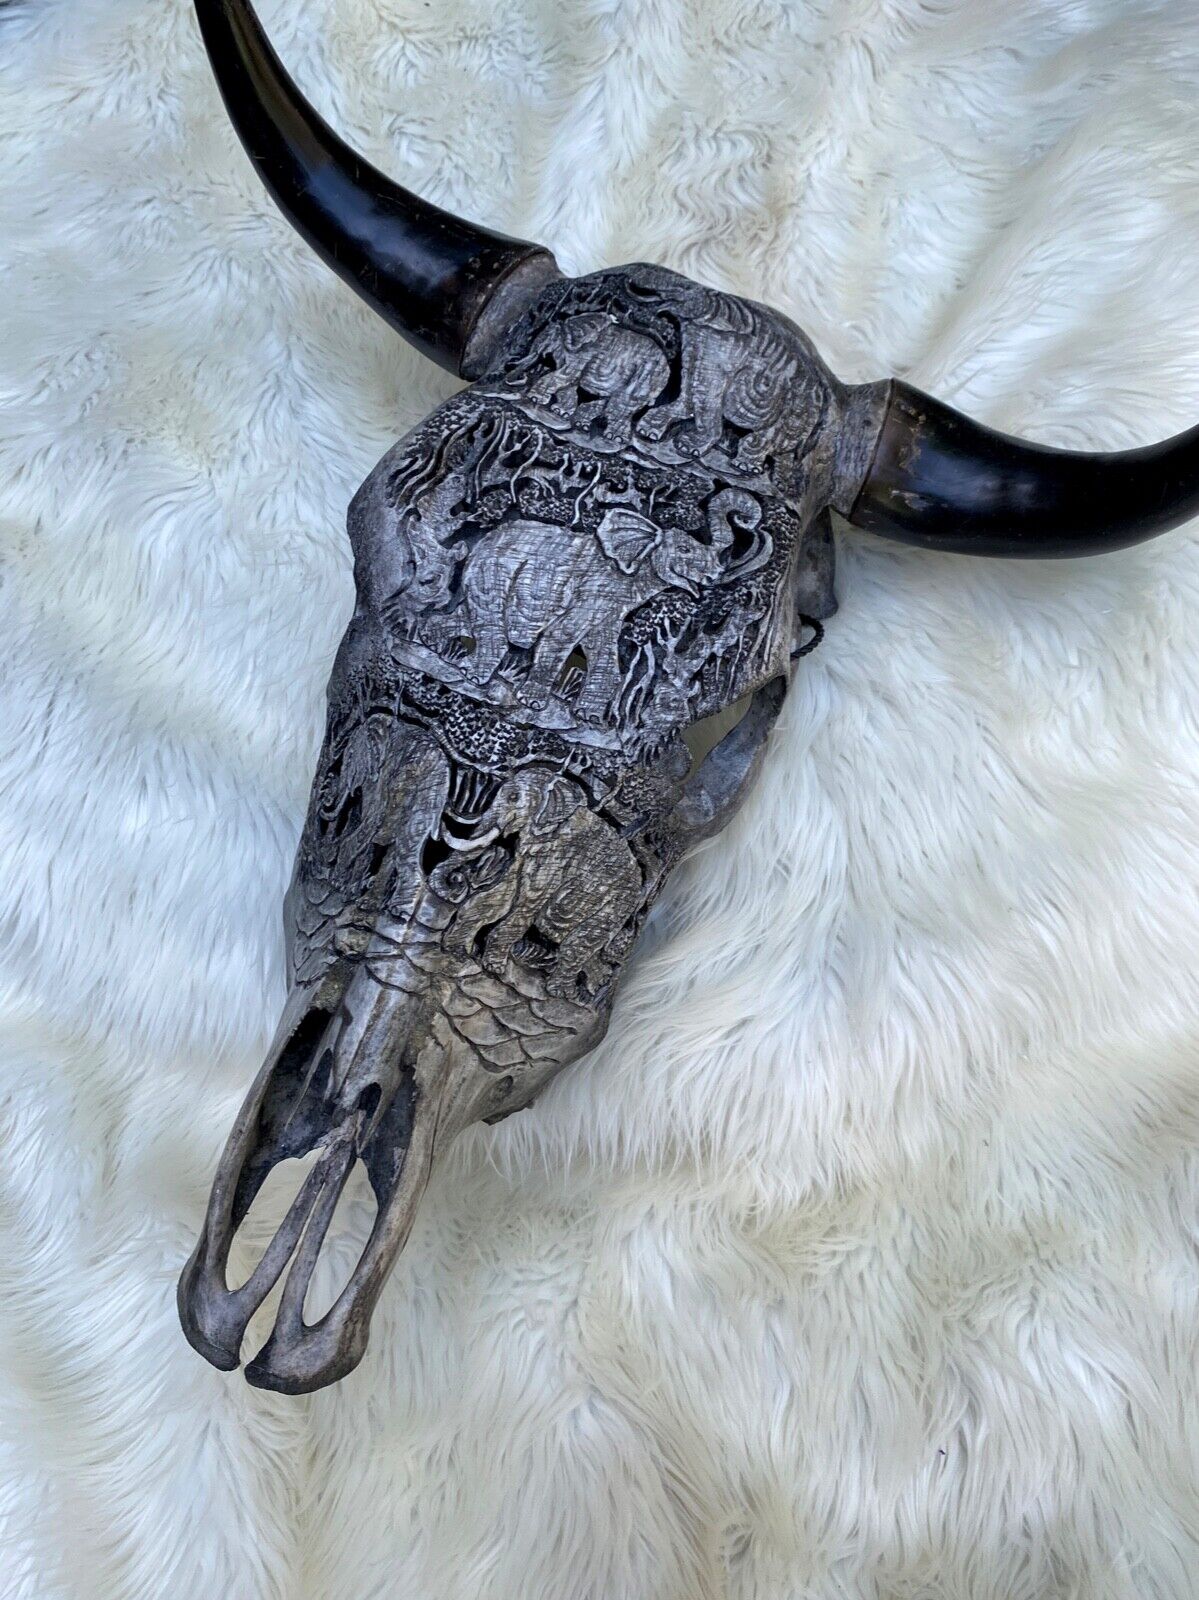 Carved Cow Skull Bull Skull HORNS Elephant Skull Animal Cow Carved Ram Carved